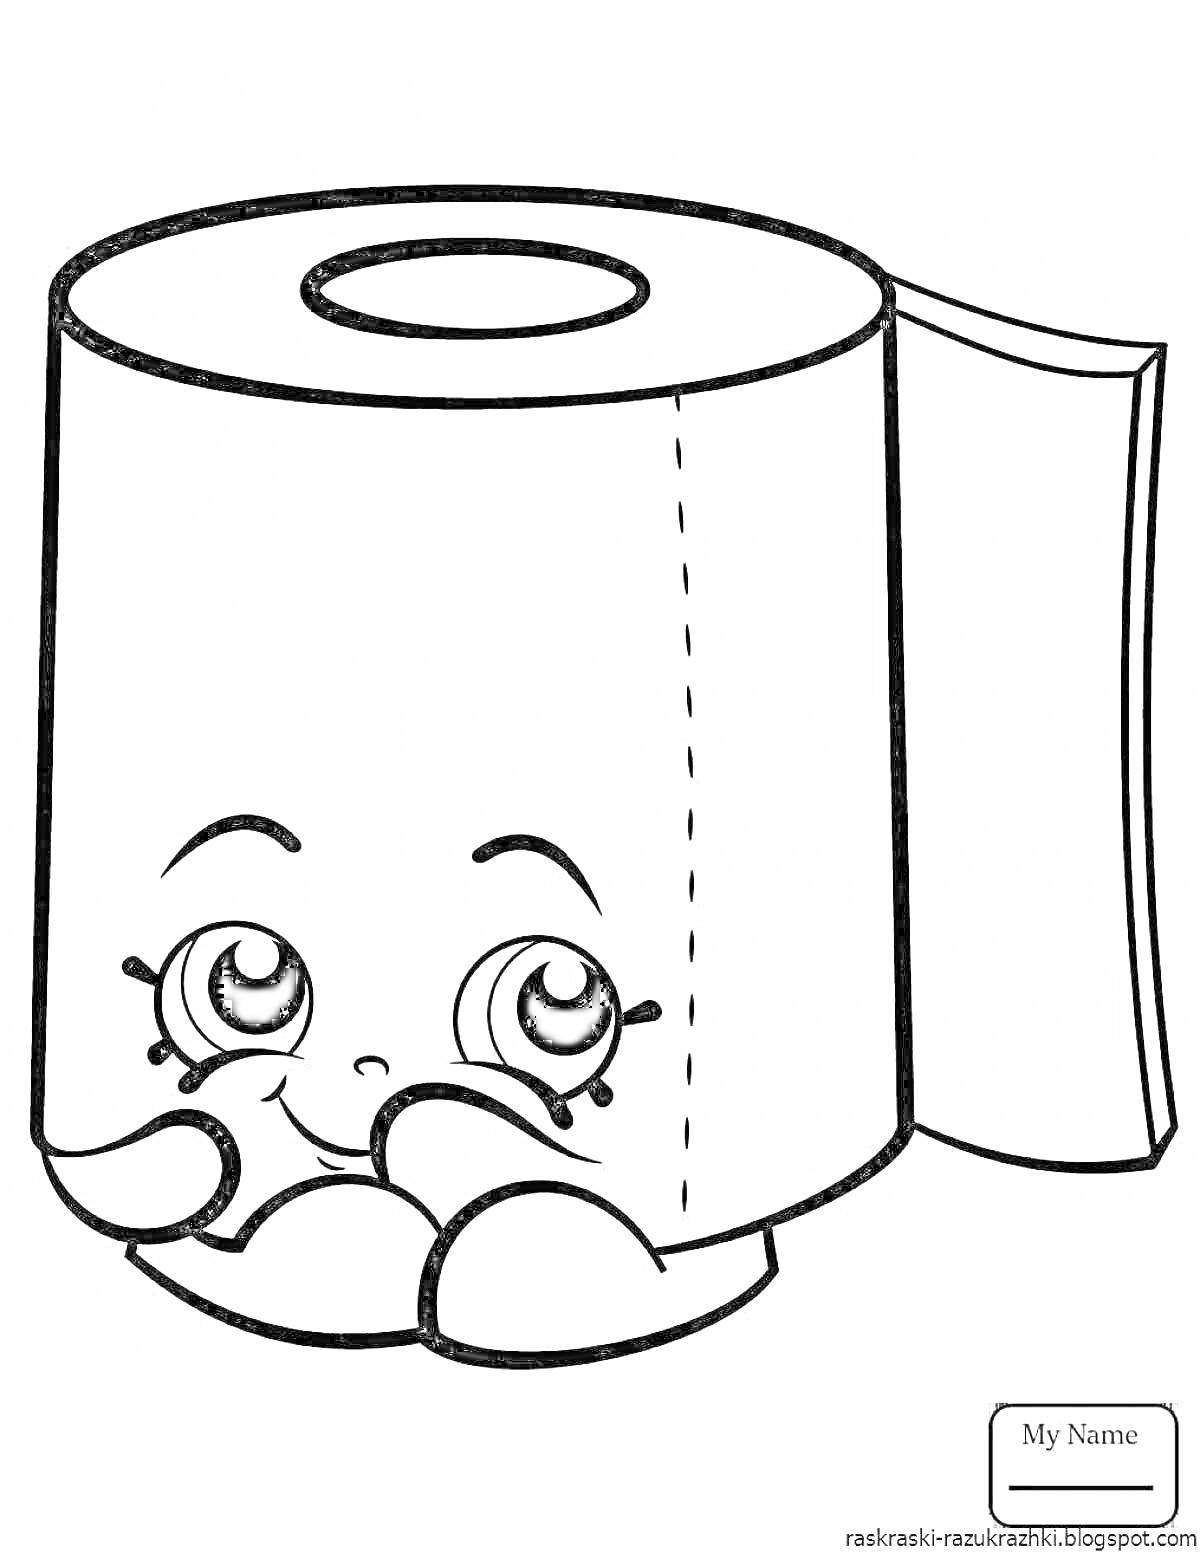 Рулон туалетной бумаги с глазами, руками и улыбкой